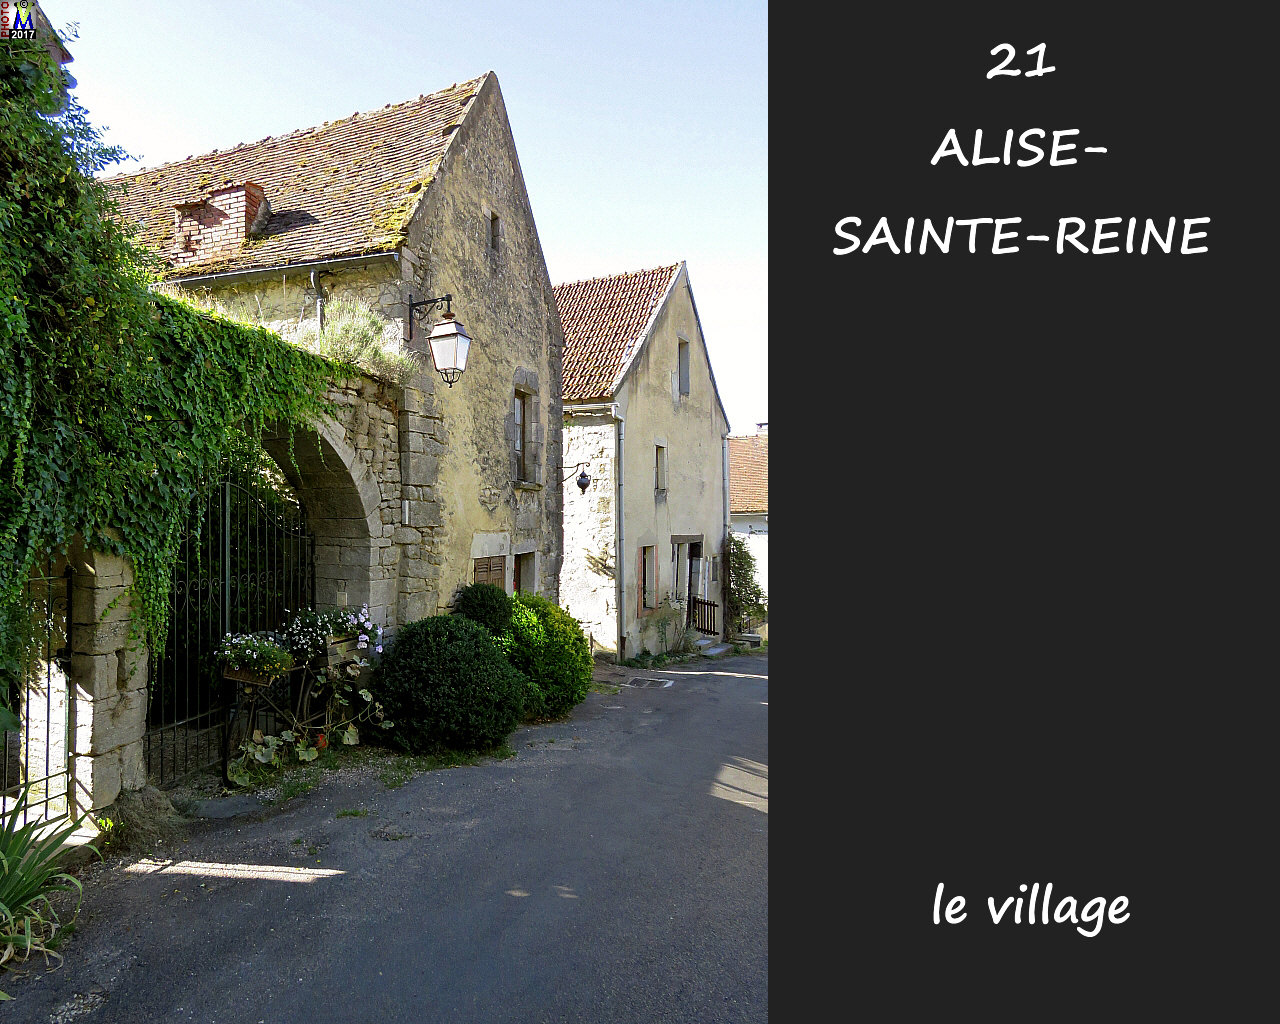 21ALISE-SAINTE-REINE_village_1008.jpg